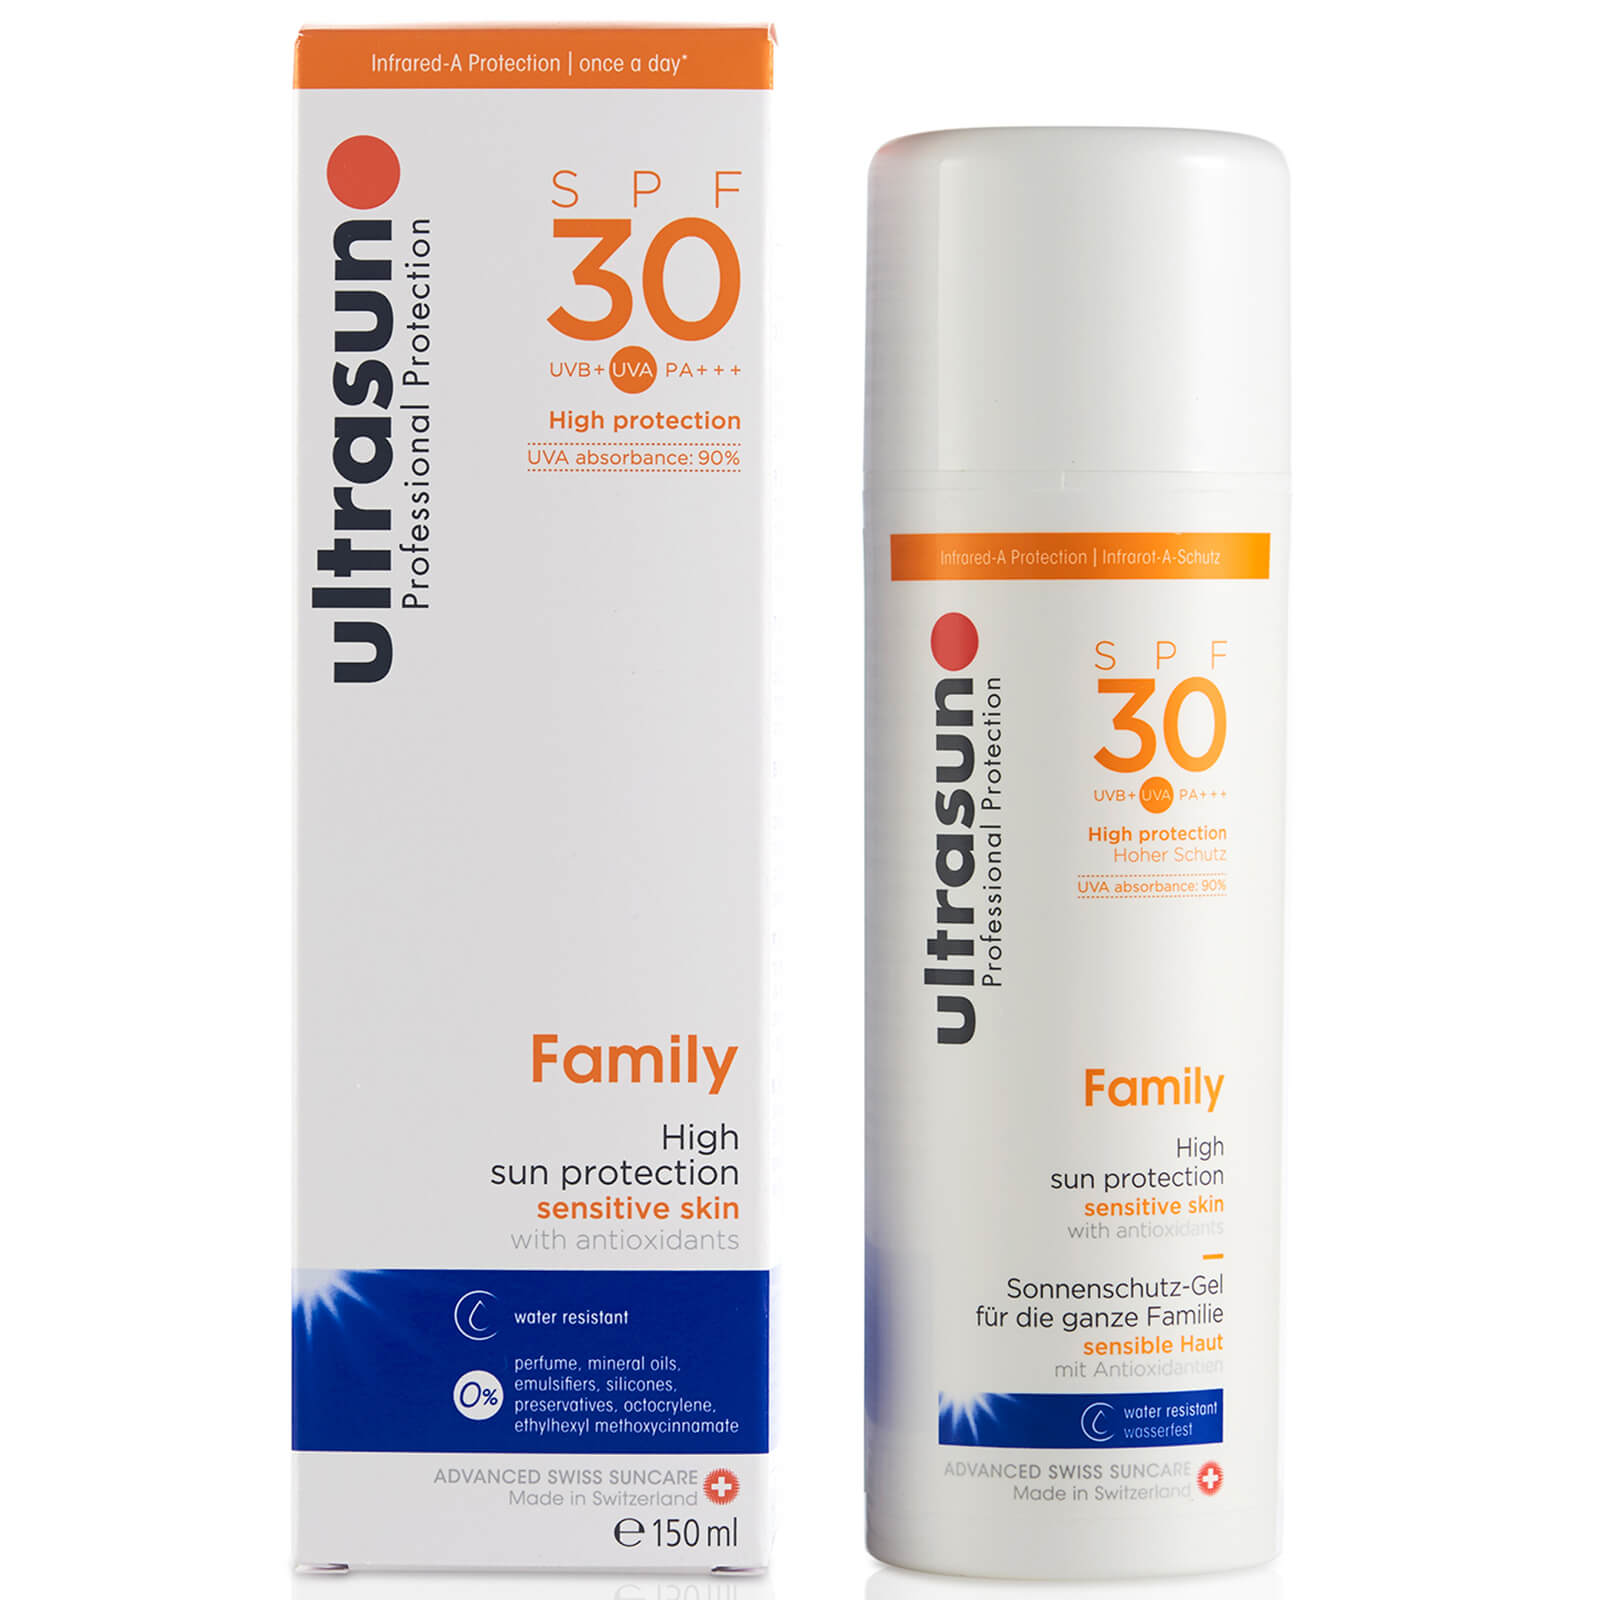  Crème Solaire Ultrasun Family Spf 30 - Super Sensitive (150ml) 